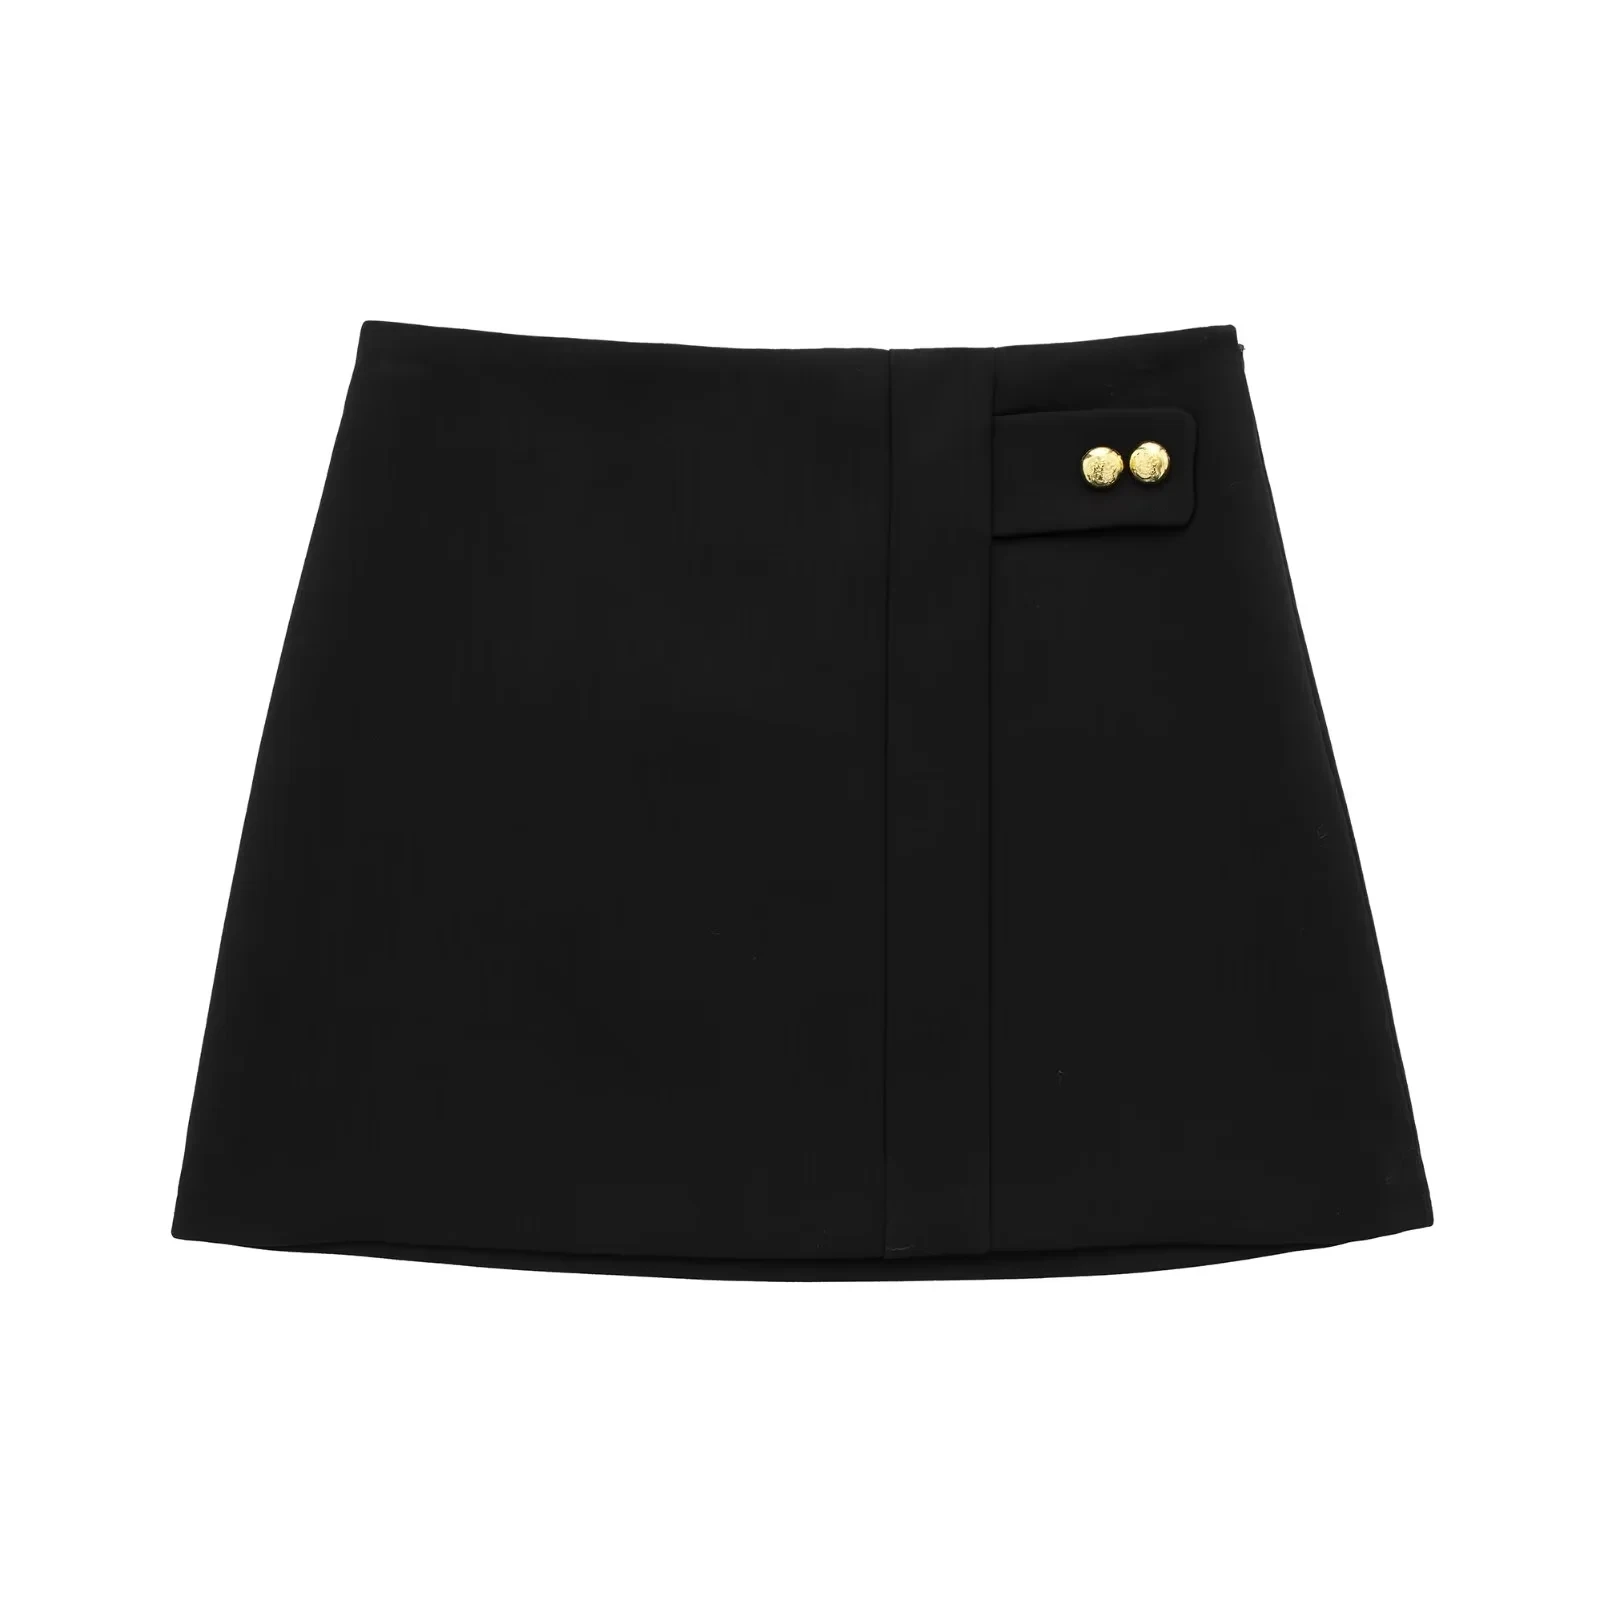 

TRAF Chic Asymmetric Fornt Black Mini Skirt Buttons A-Line Hem Short Skirt For Woman High Waist Side Hidded Zipper Women Skirts